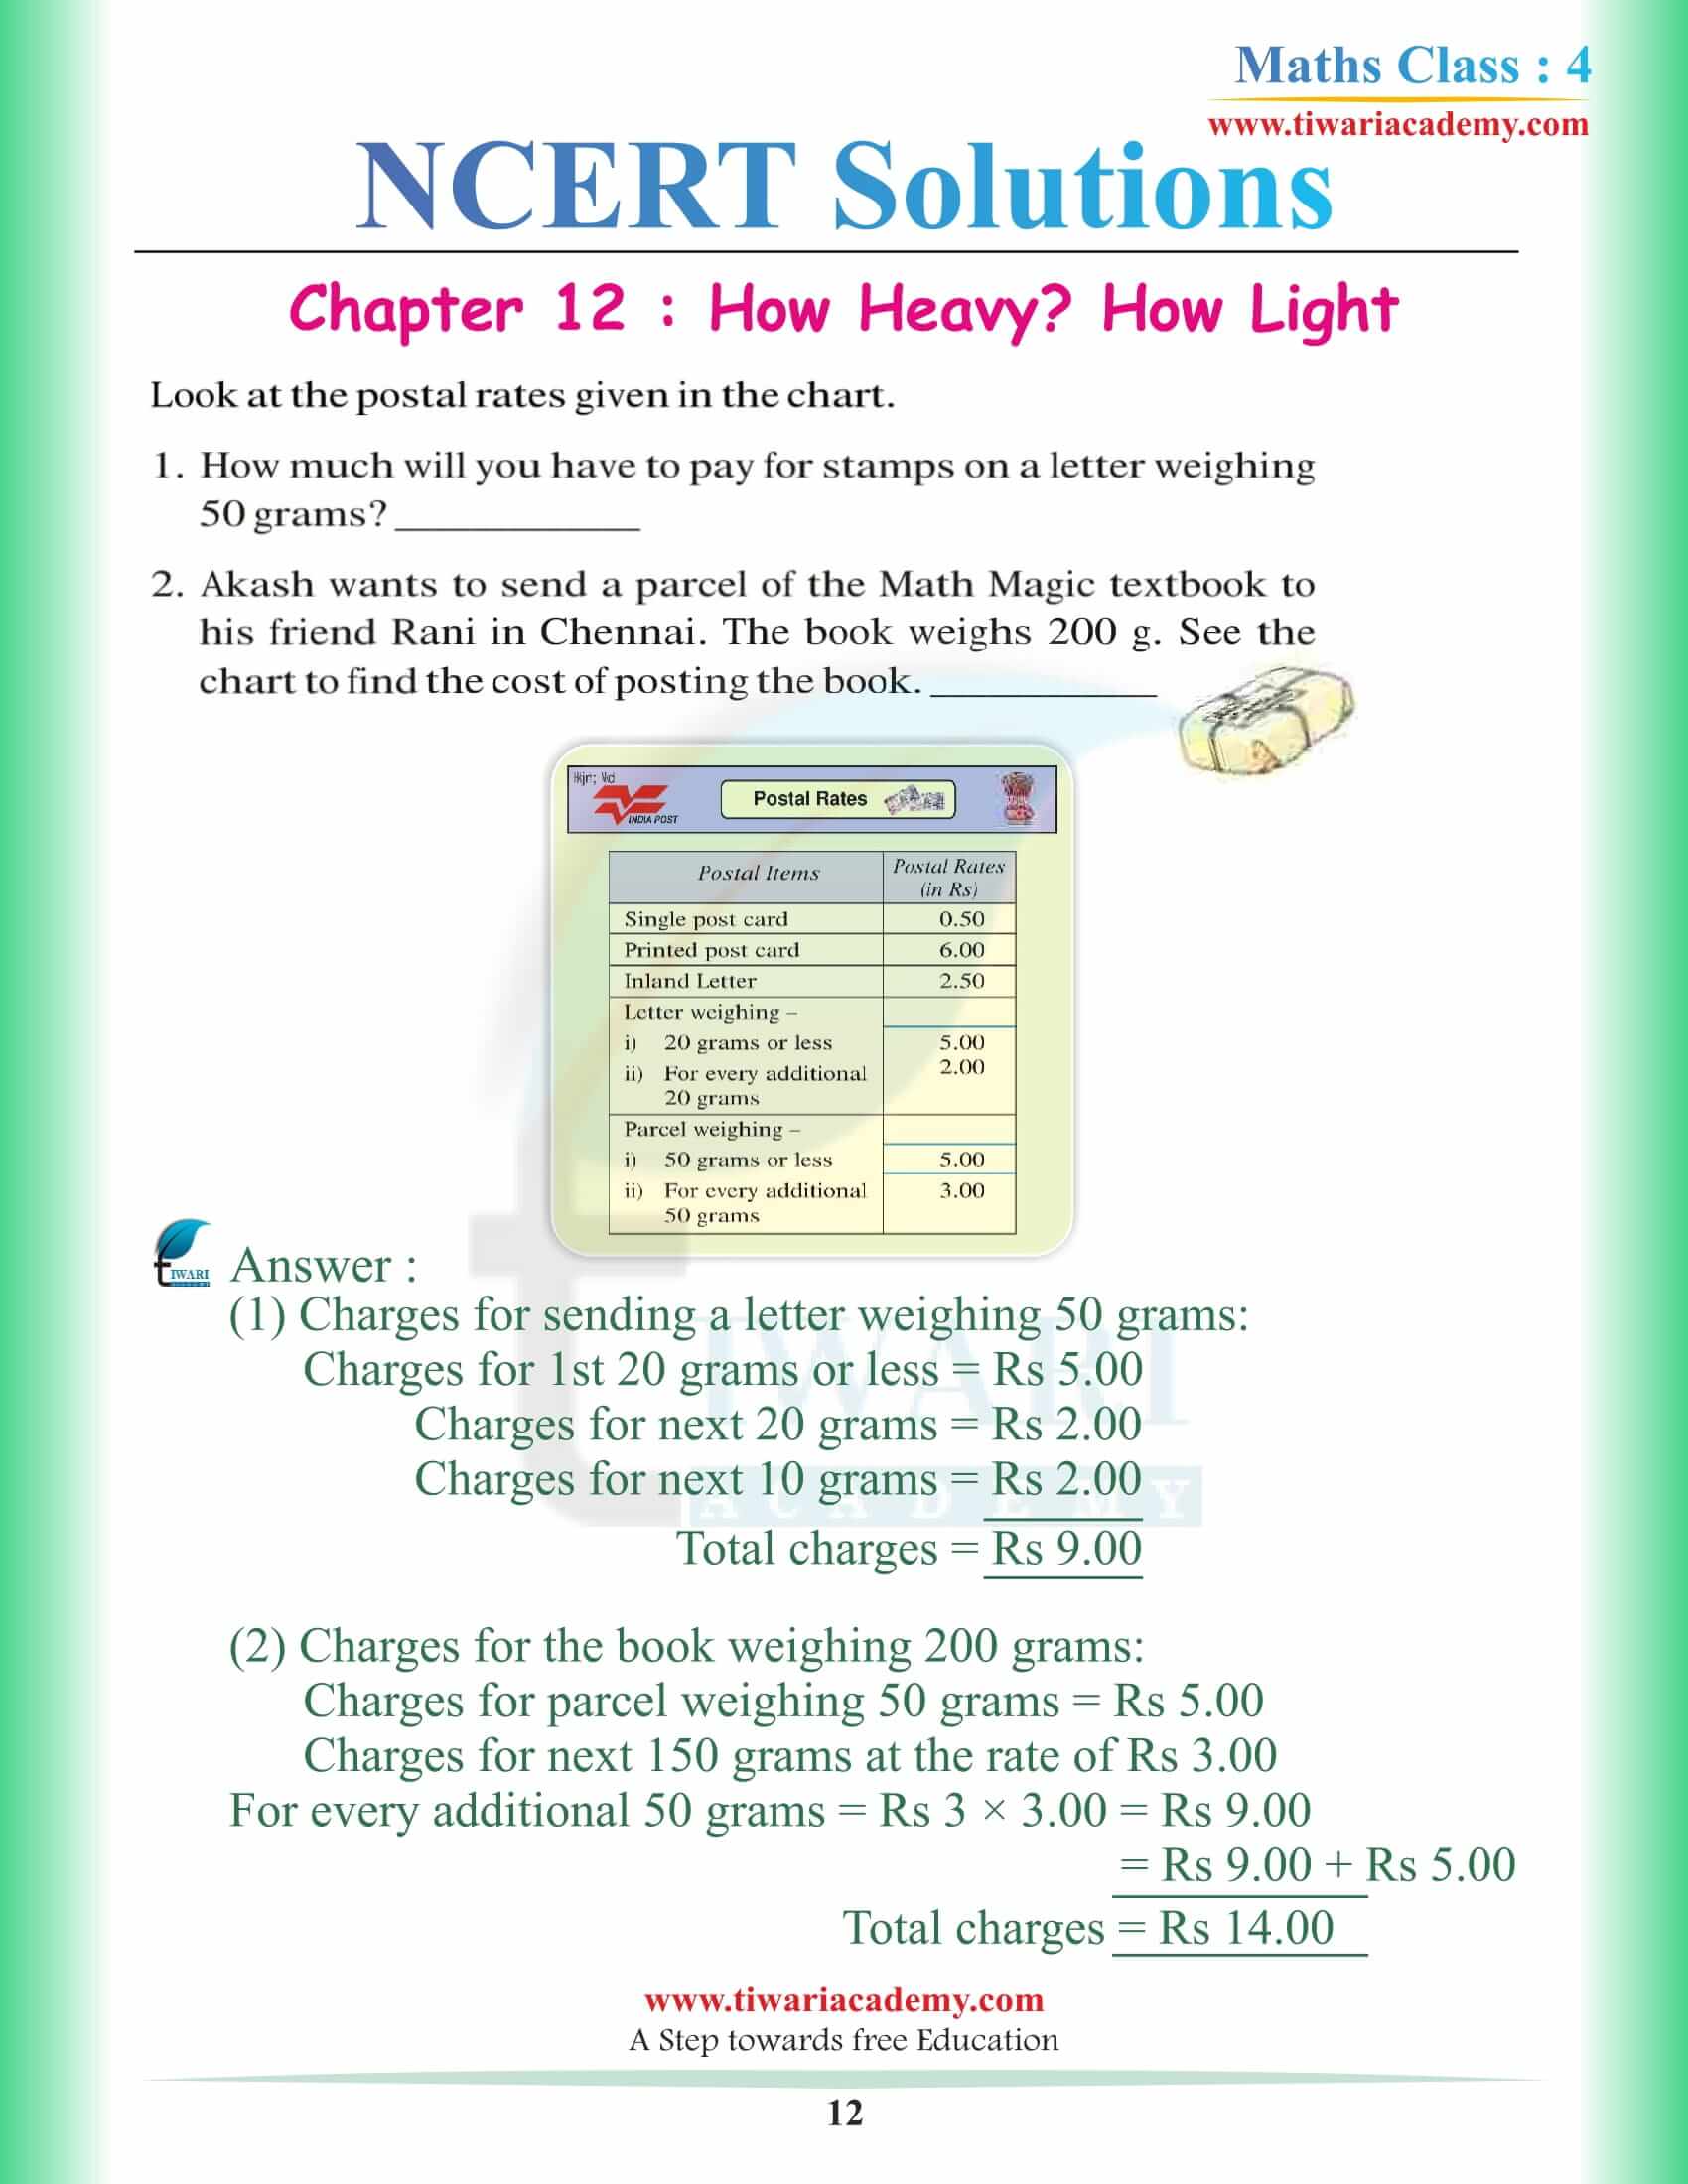 Class 4 Maths NCERT Chapter 12 Solutions